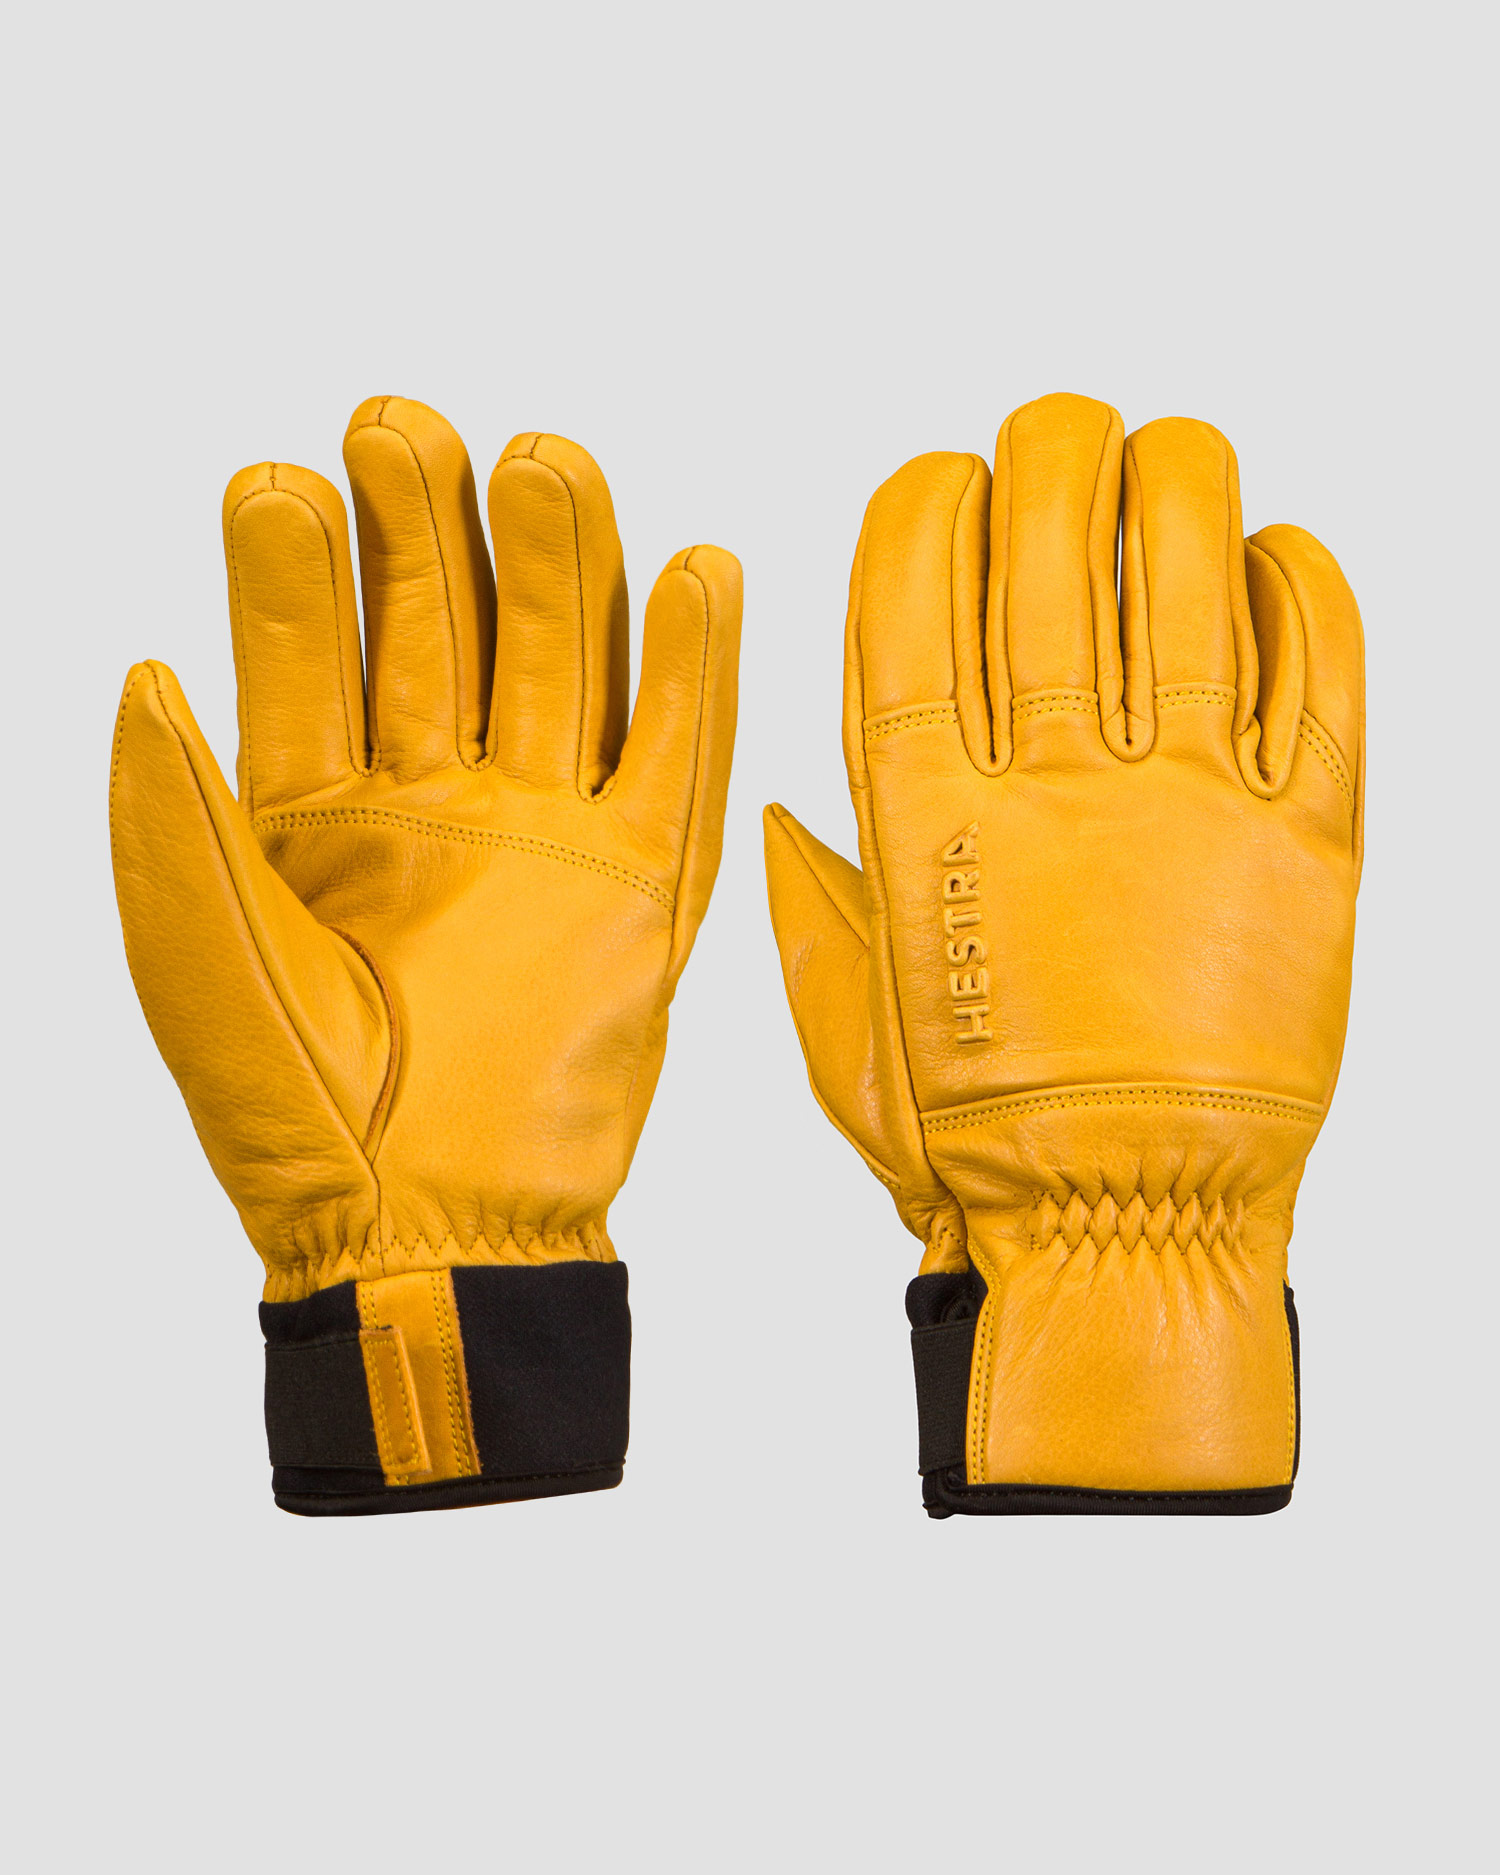 Gants de ski jaunes pour hommes Hestra Omni - 5 finger 30430-701 |  S'portofino